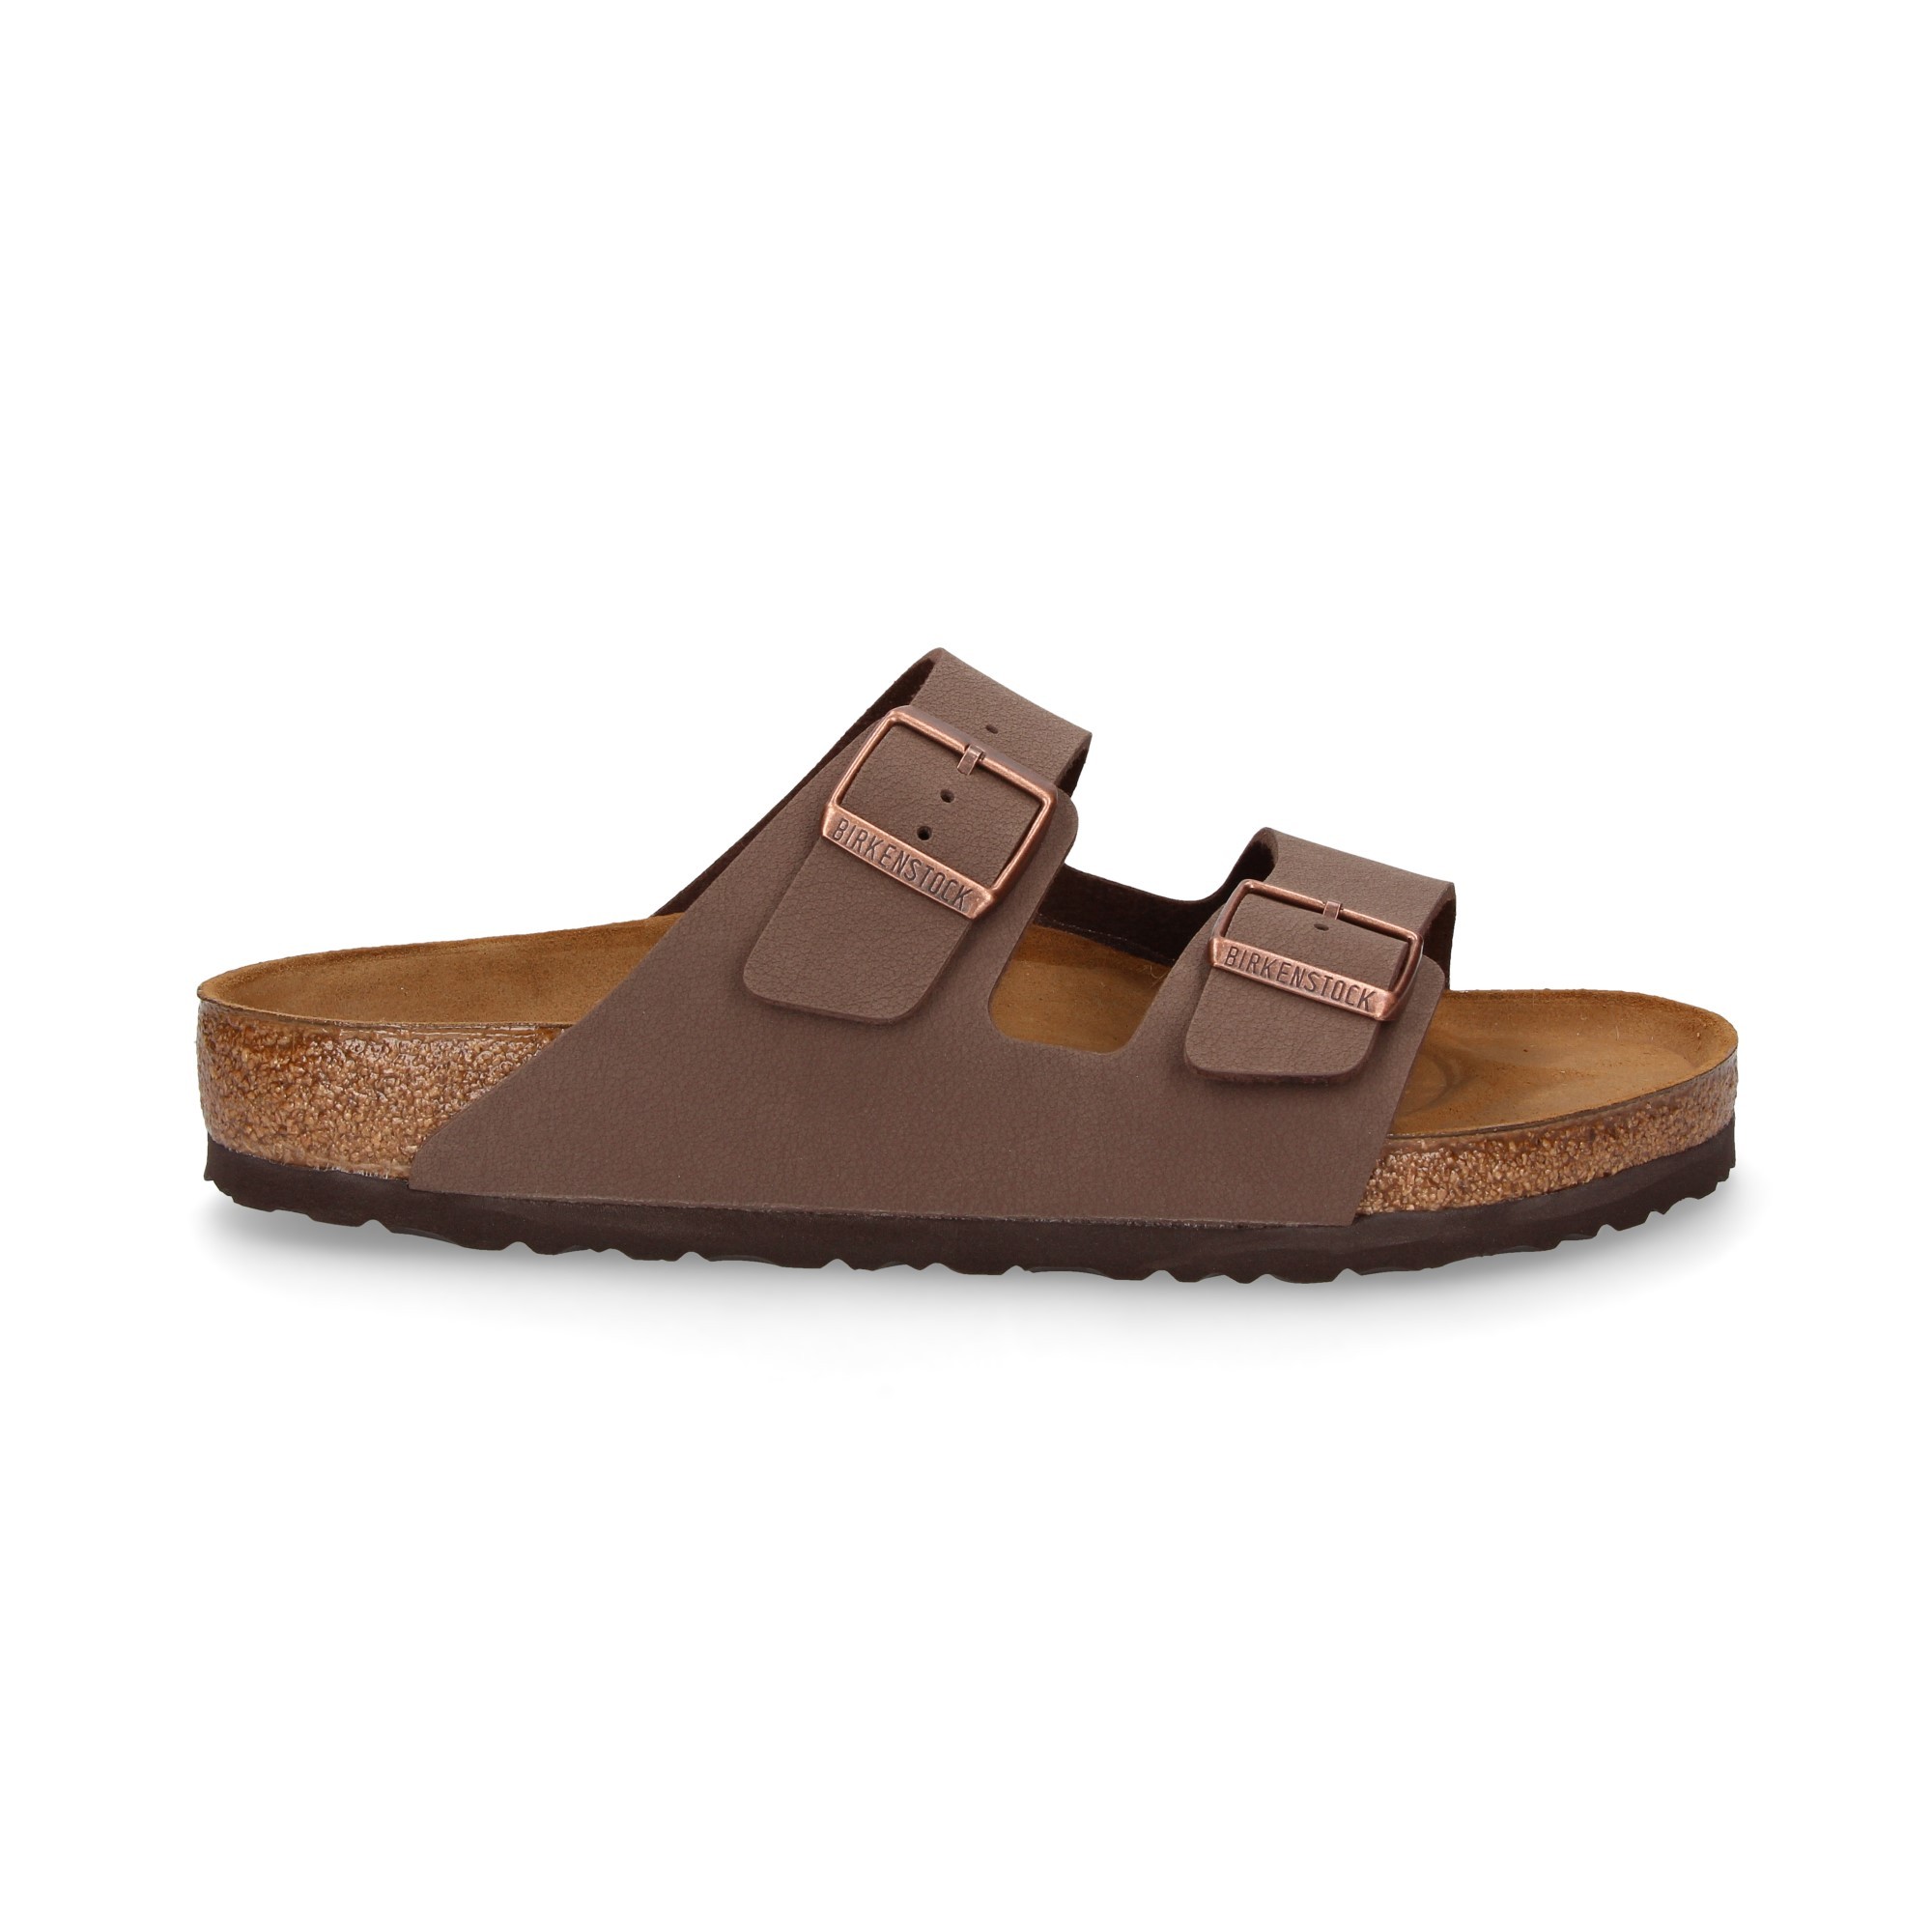 BIRKENSTOCK Men's sandals 151181 MOKA